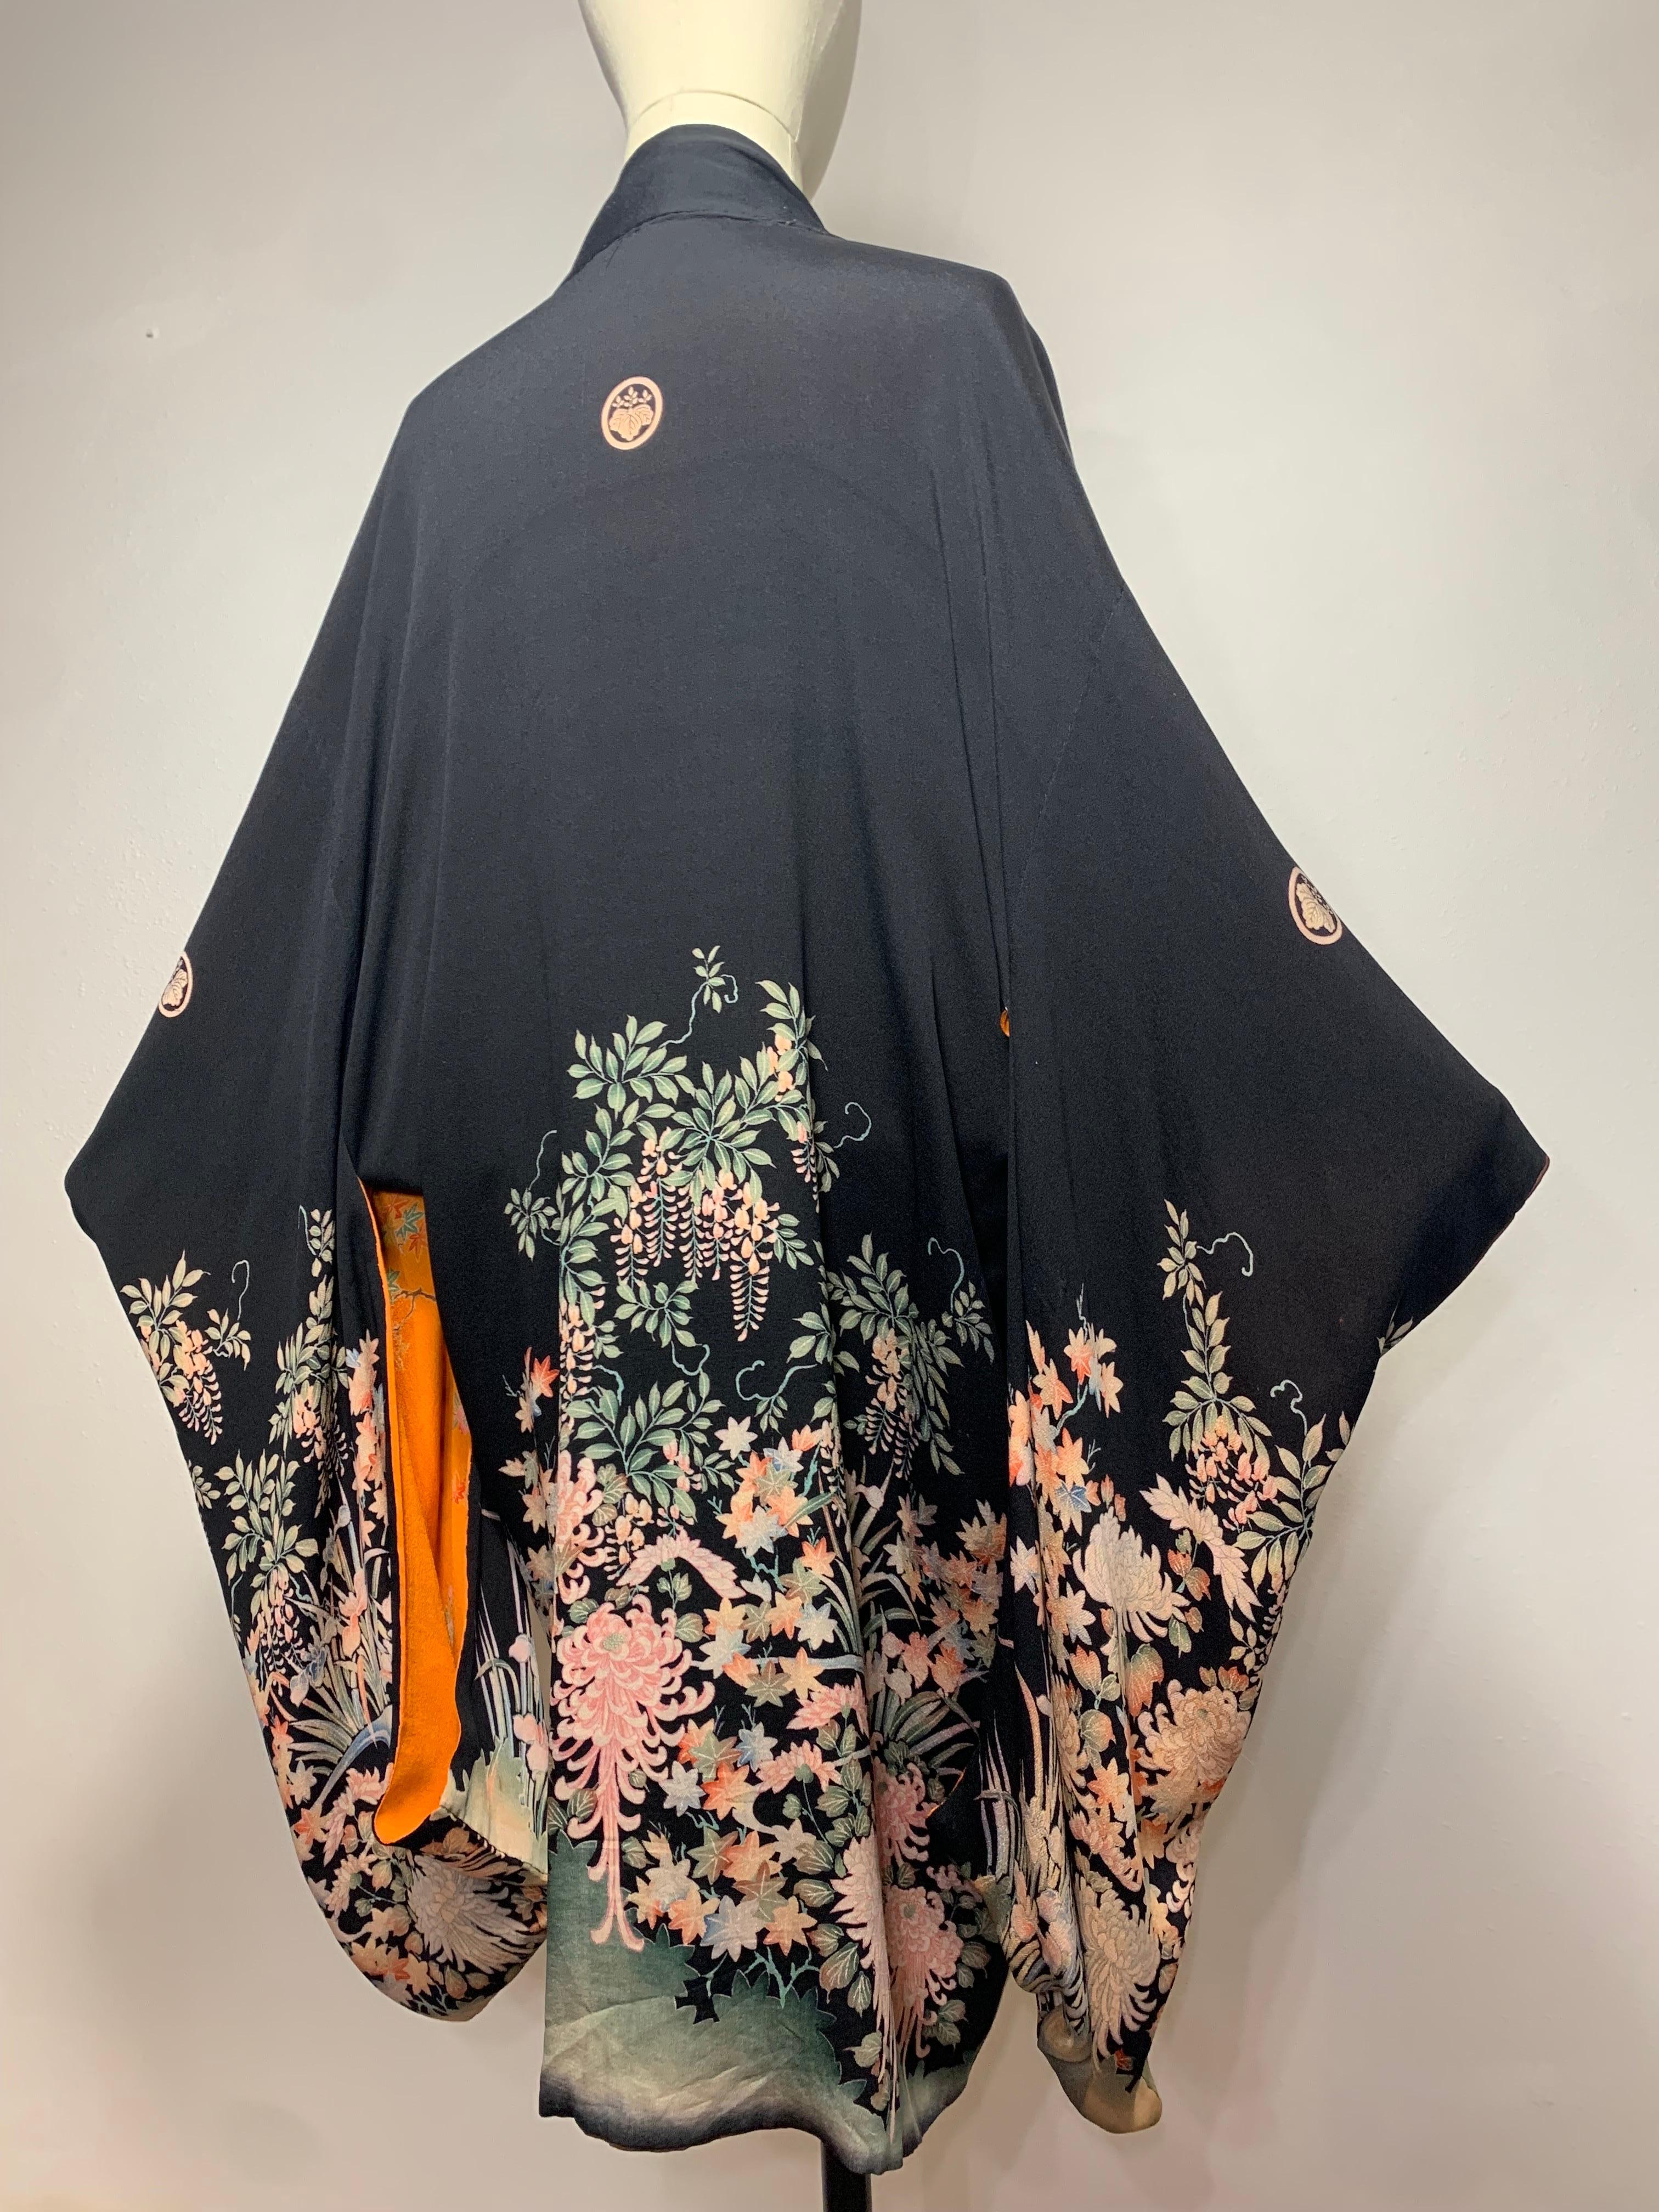 Magnifique kimono en soie imprimé entièrement réversible des années 1930, dans les coloris Marigold, Black et Chocolate Brown : Ce kimono rare et inhabituel descend jusqu'aux genoux et présente des motifs tout aussi étonnants d'un côté que de